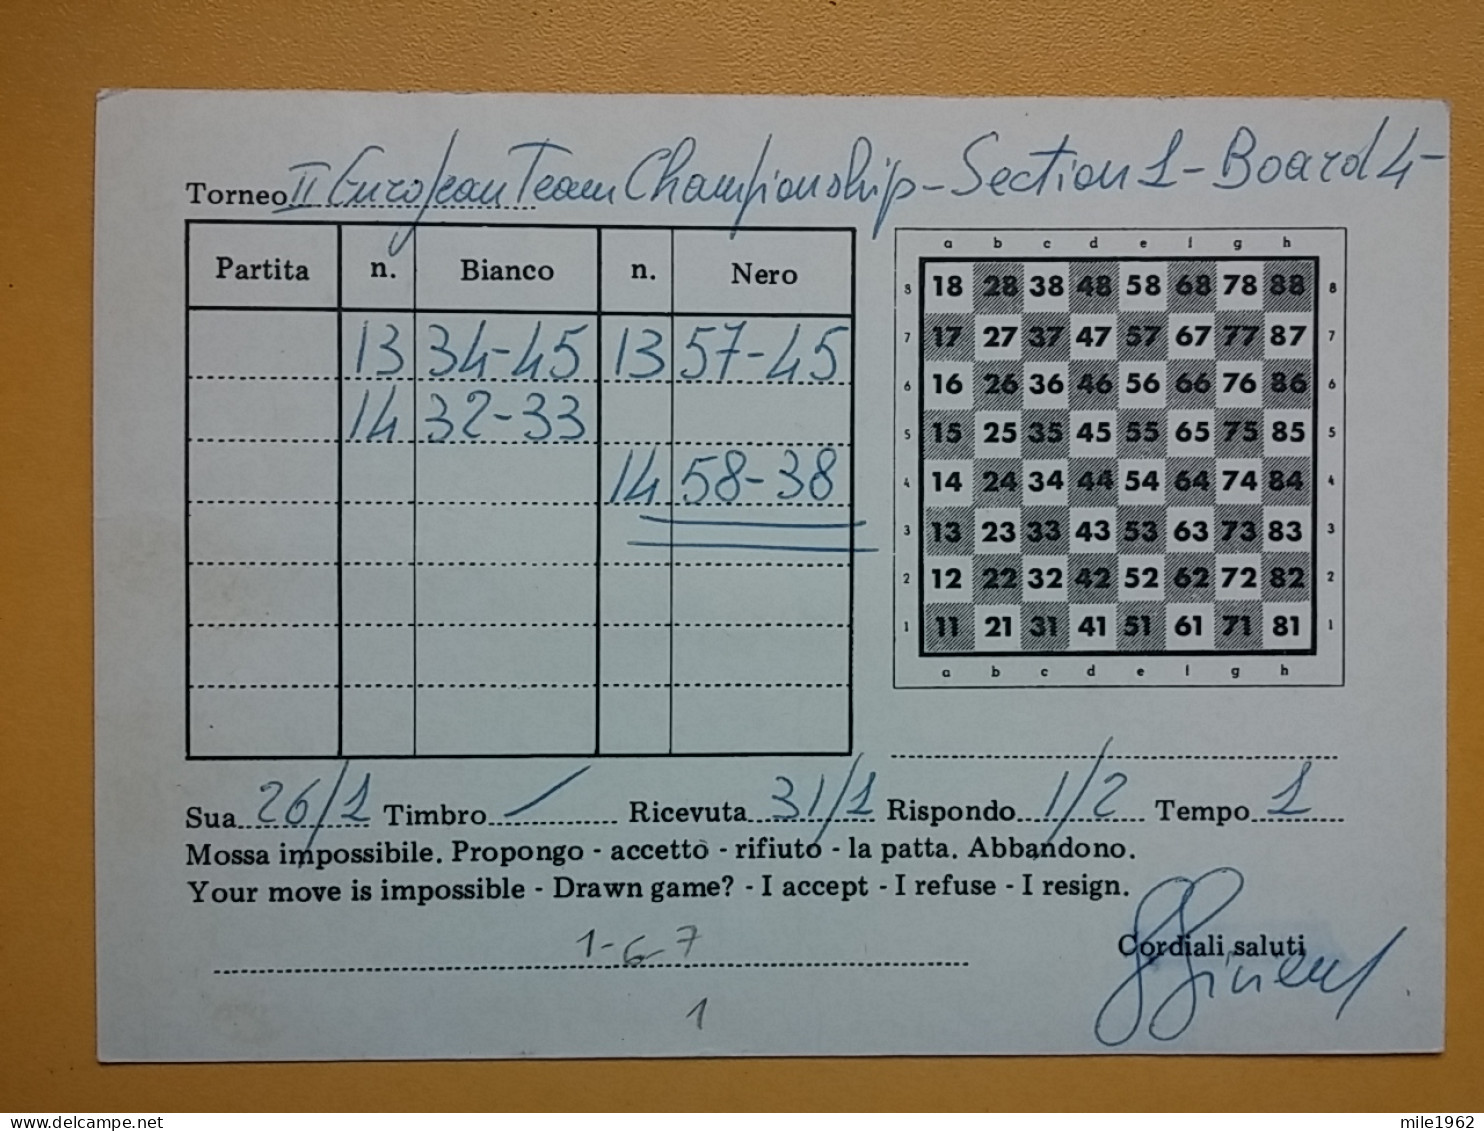 KOV 487-23- Correspondence Chess Fernschach Postcard, S. MARIA, ITALIA - BELGRADE, Schach Chess Ajedrez échecs,  - Schach